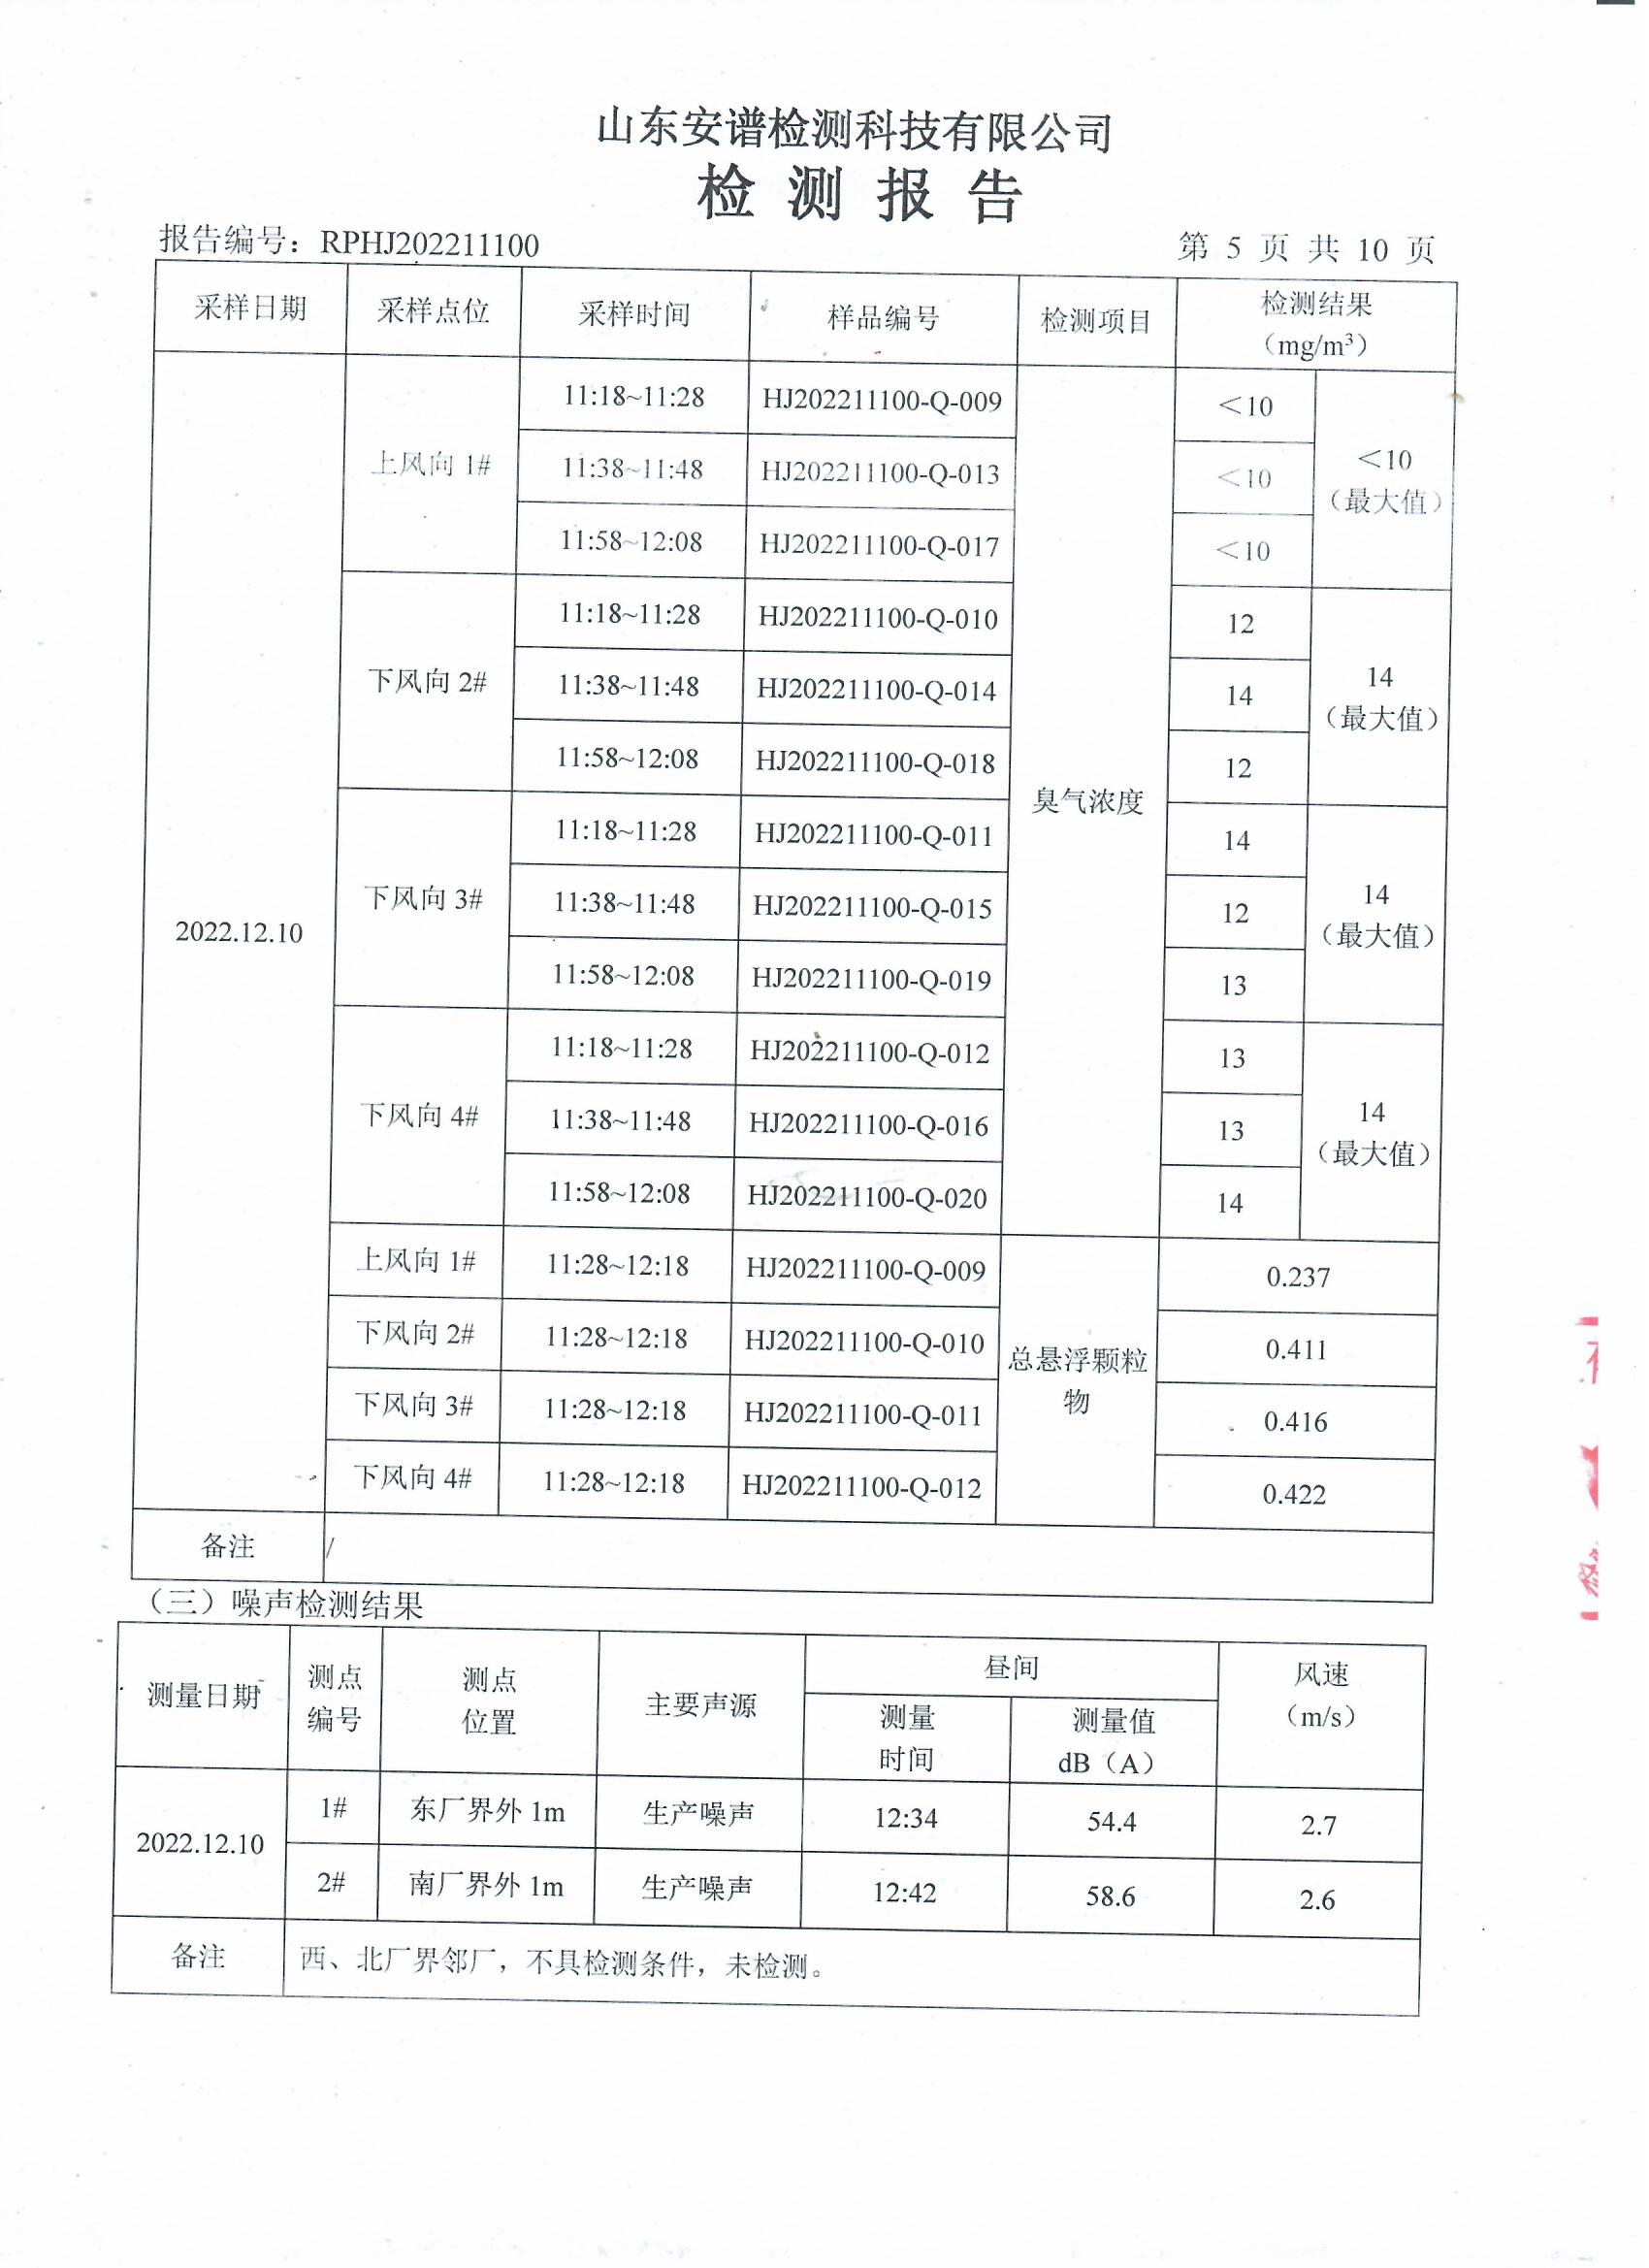 2022年第四季度检测报告公示 泰安杰盛(图7)